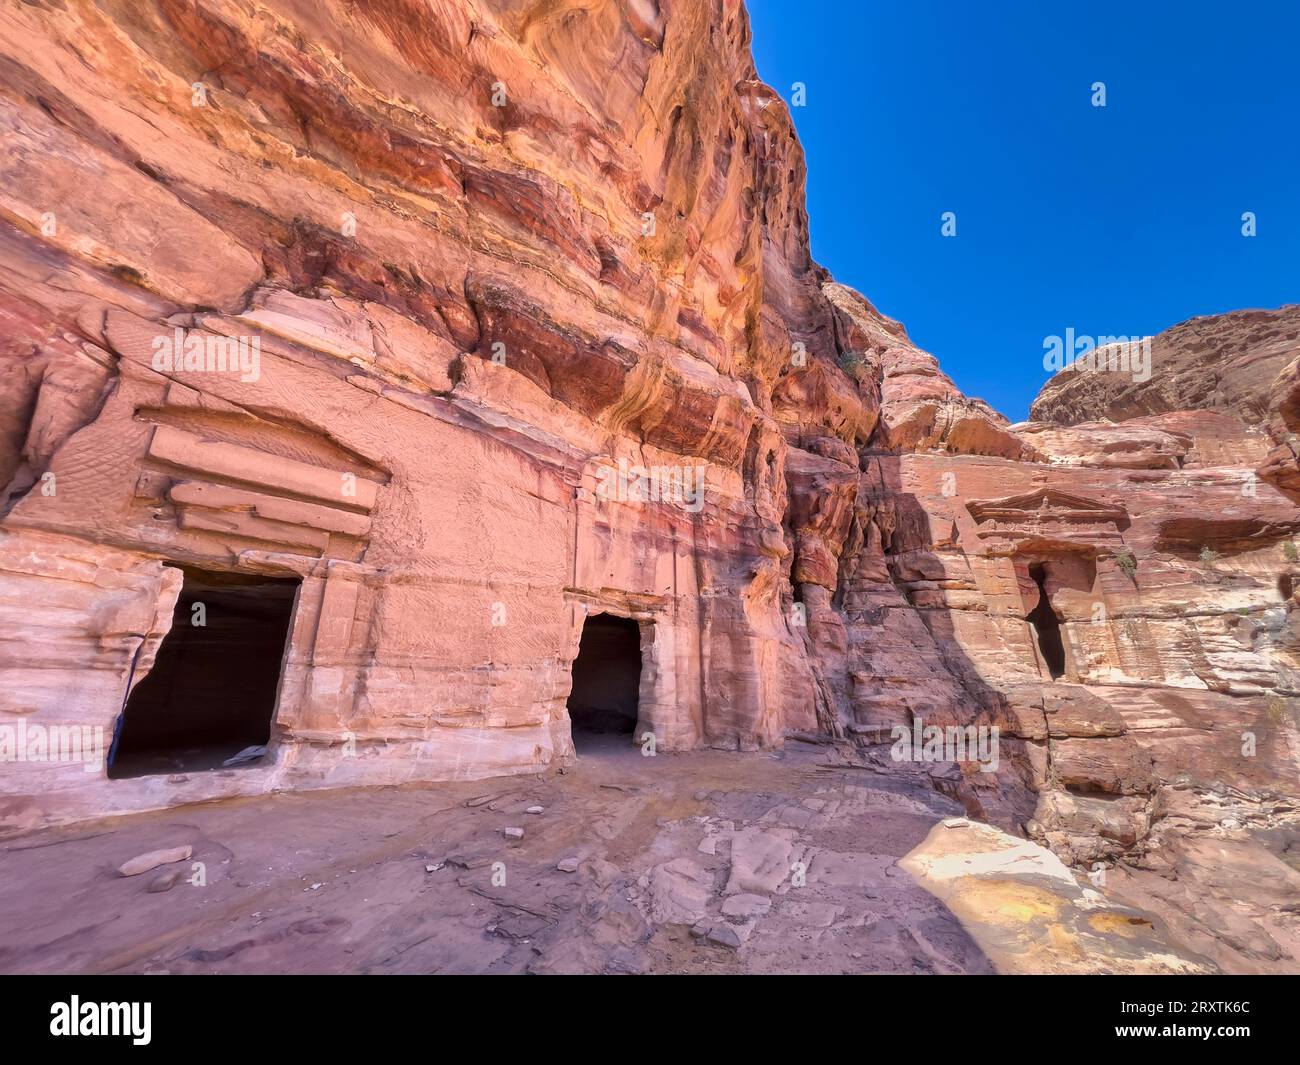 Il tempio dei leoni alati, il parco archeologico di Petra, patrimonio dell'umanità dell'UNESCO, una delle nuove sette meraviglie del mondo, Petra, Giordania Foto Stock